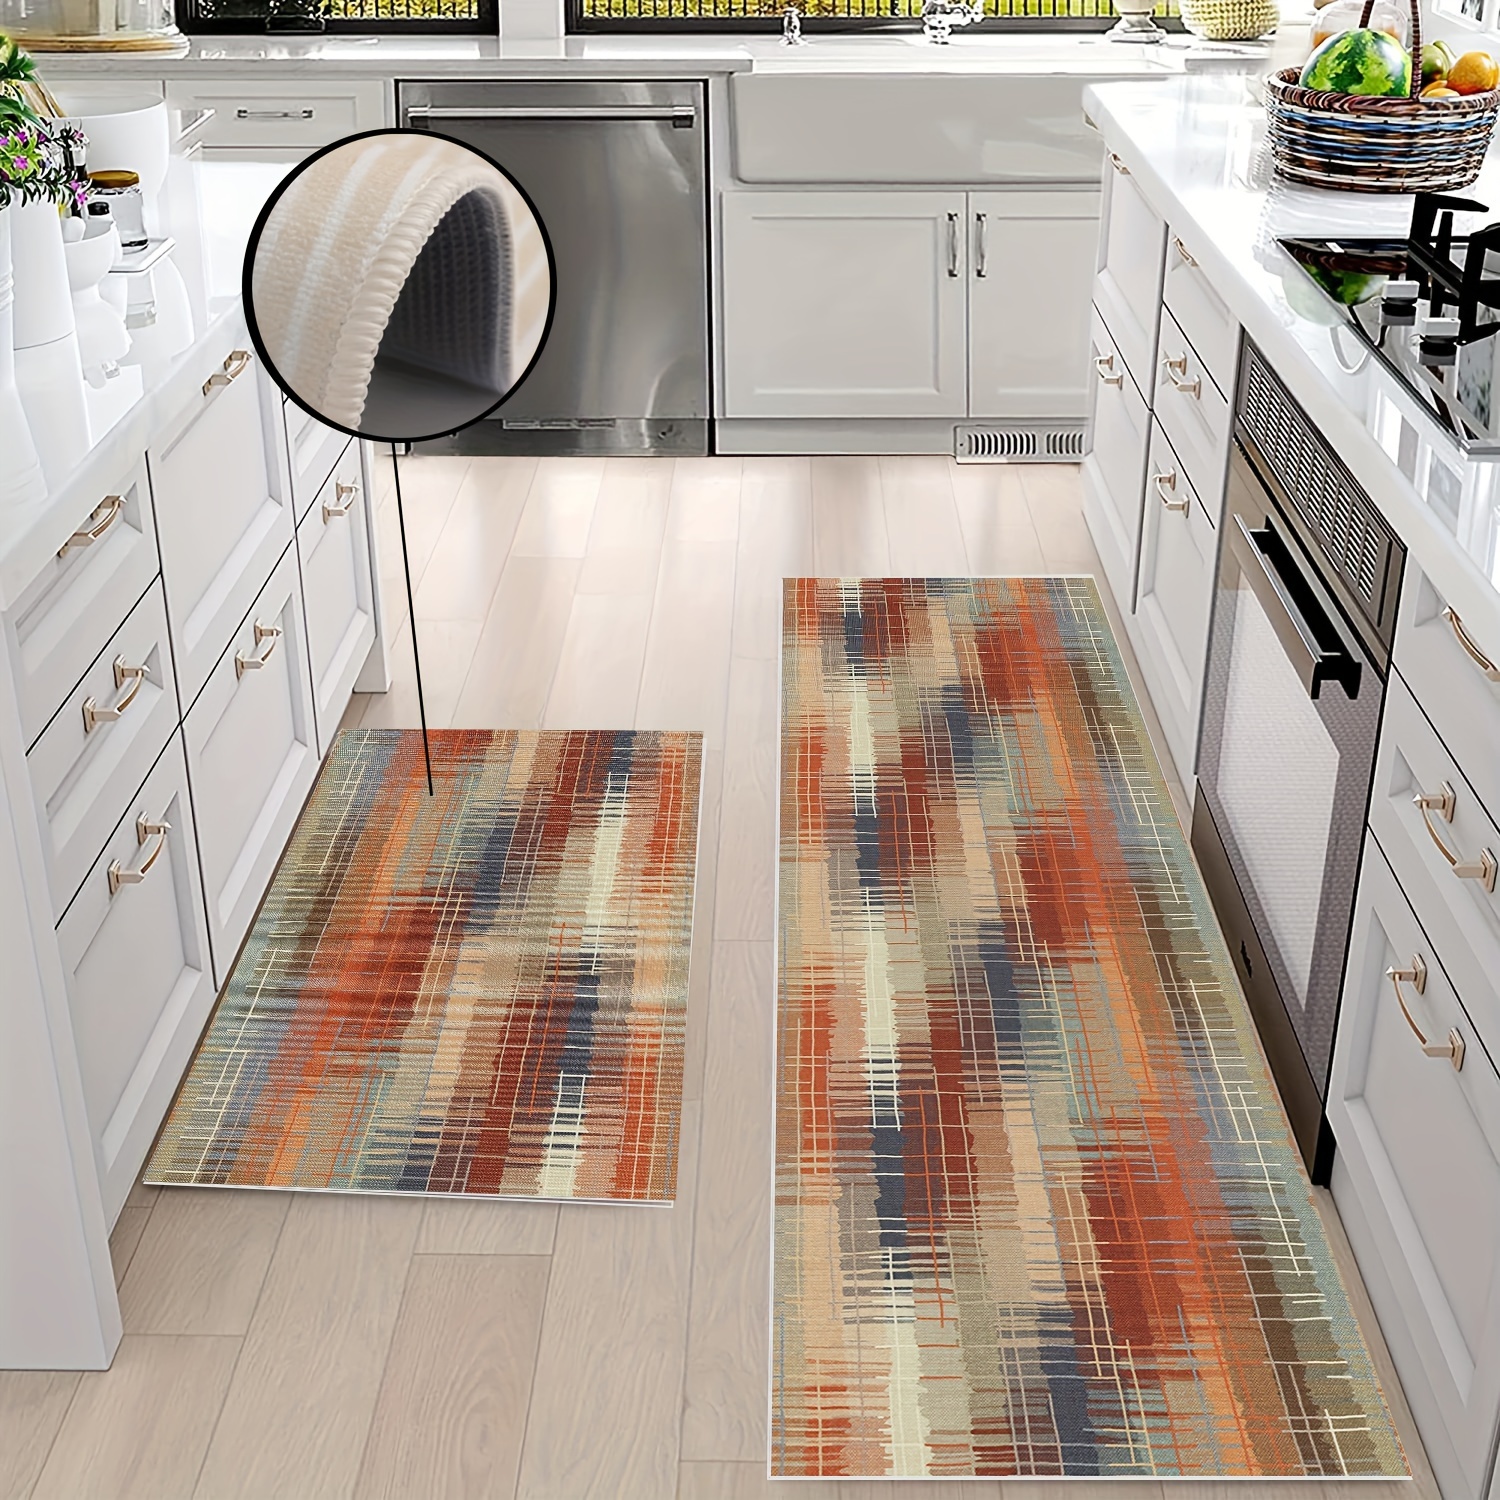  Tapetes de cocina para piso, alfombras de cocina, 2